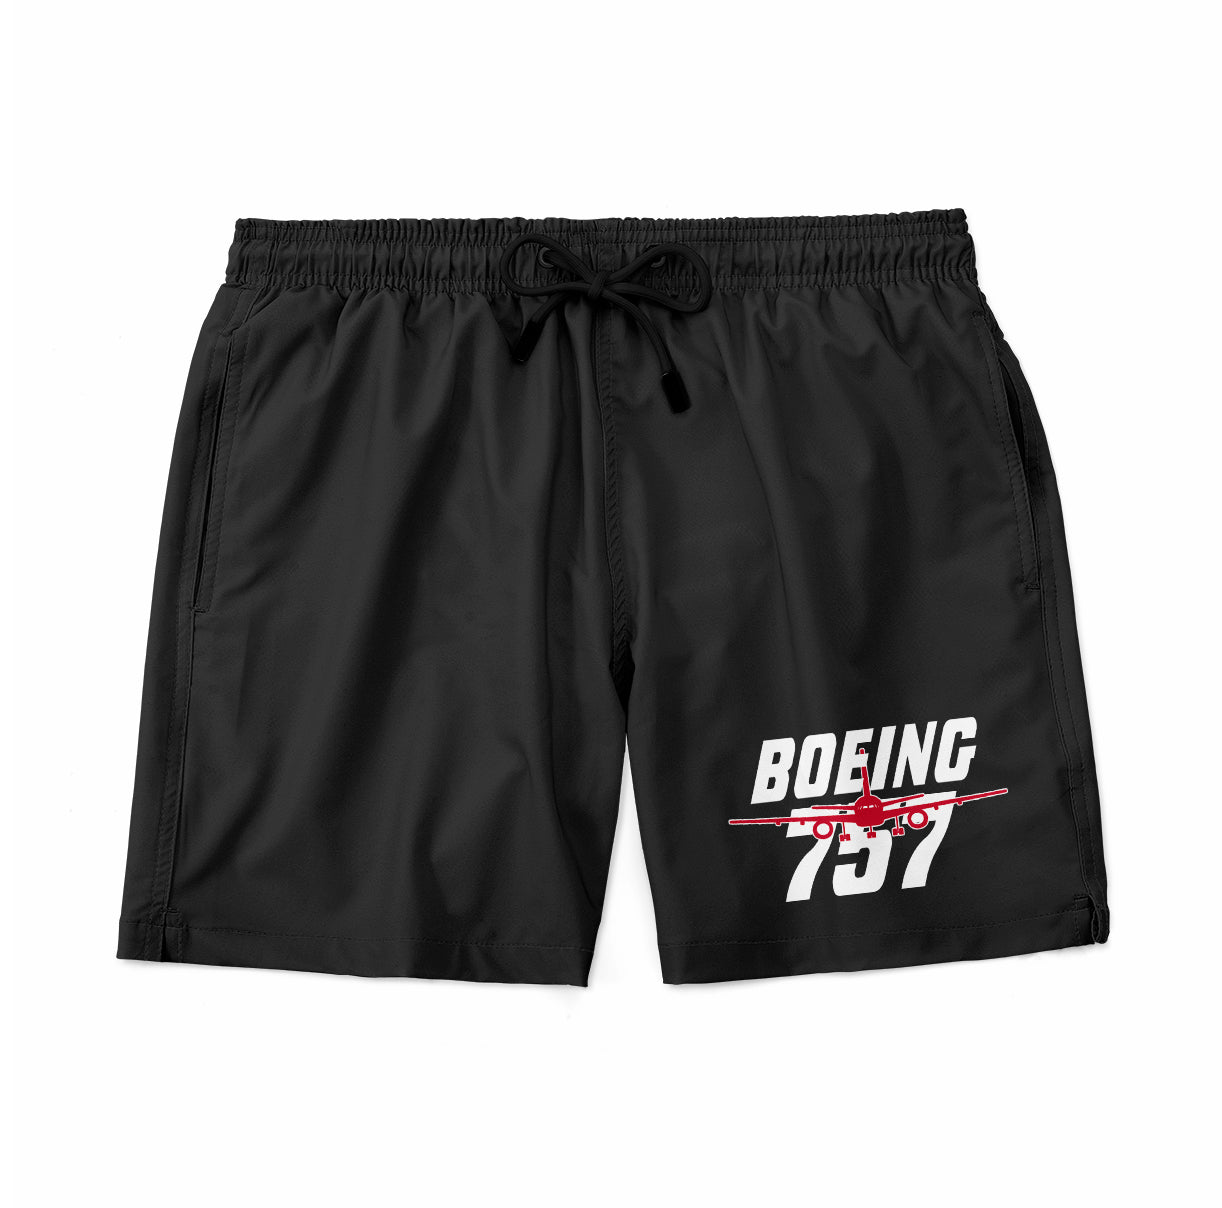 Amazing Boeing 757 Designed Swim Trunks & Shorts